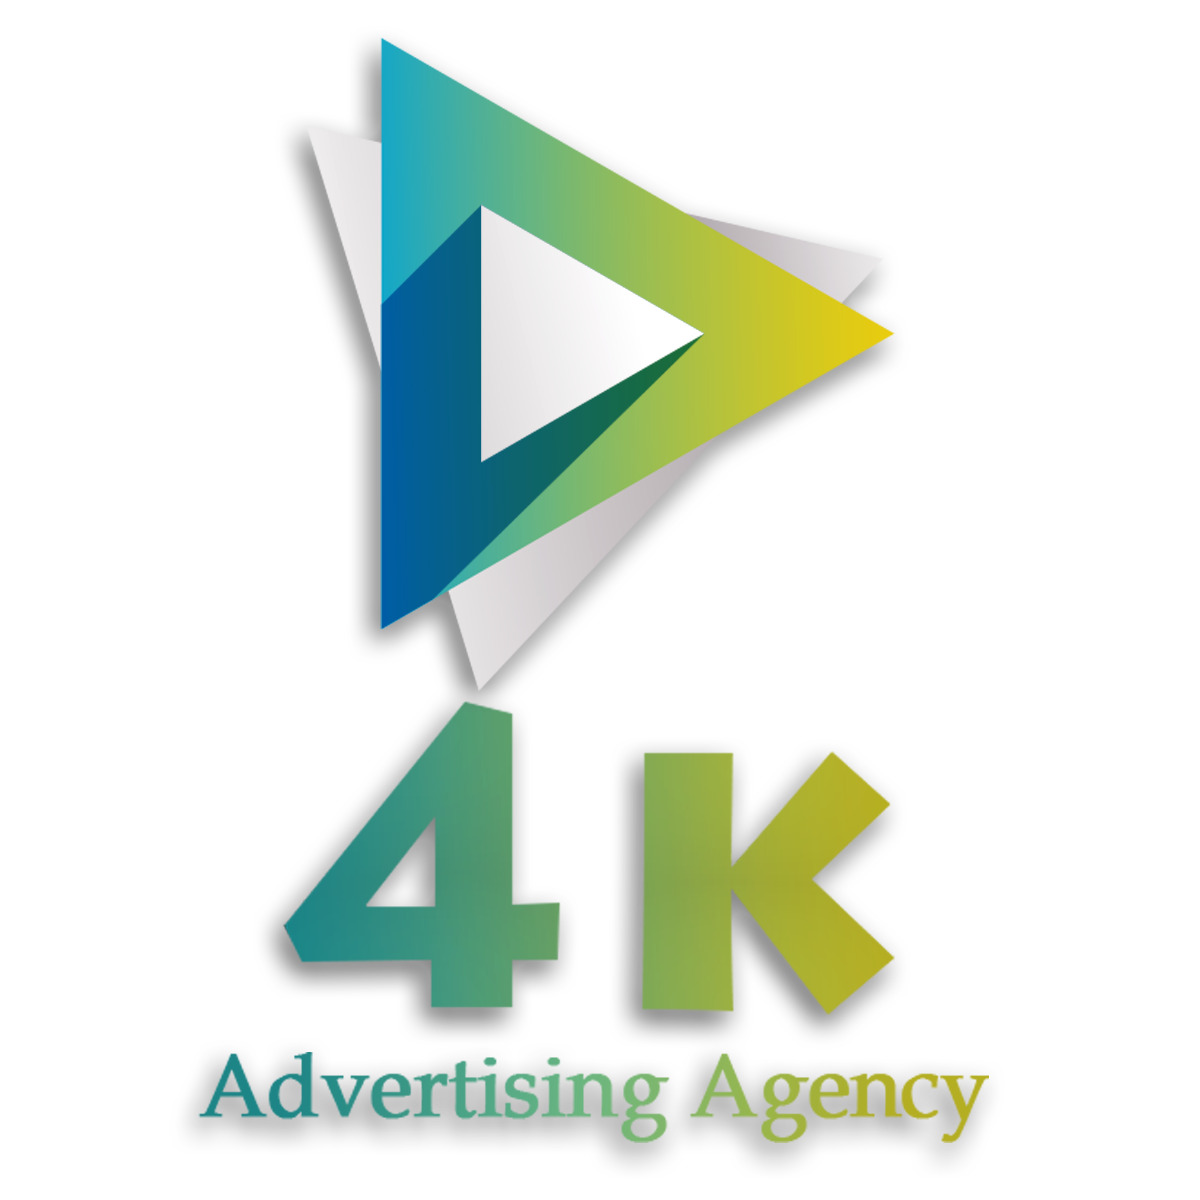 4k Agency